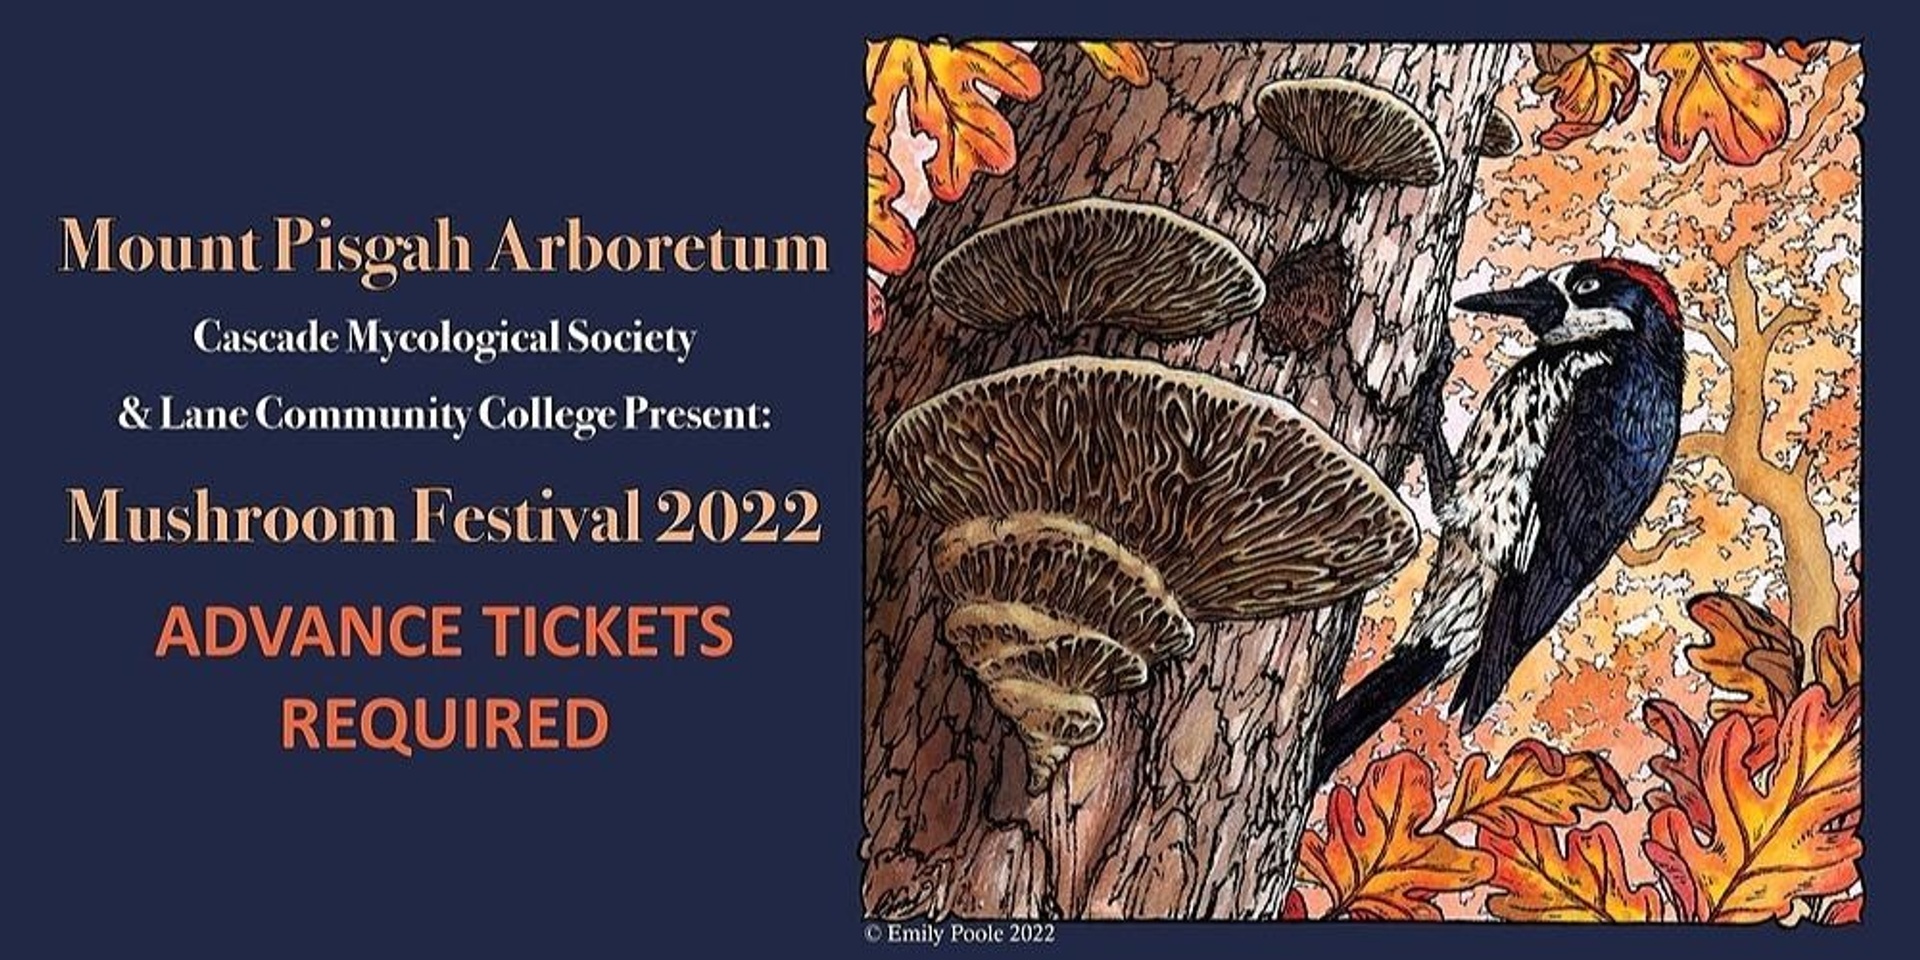 Mount Pisgah Arboretum Mushroom Festival